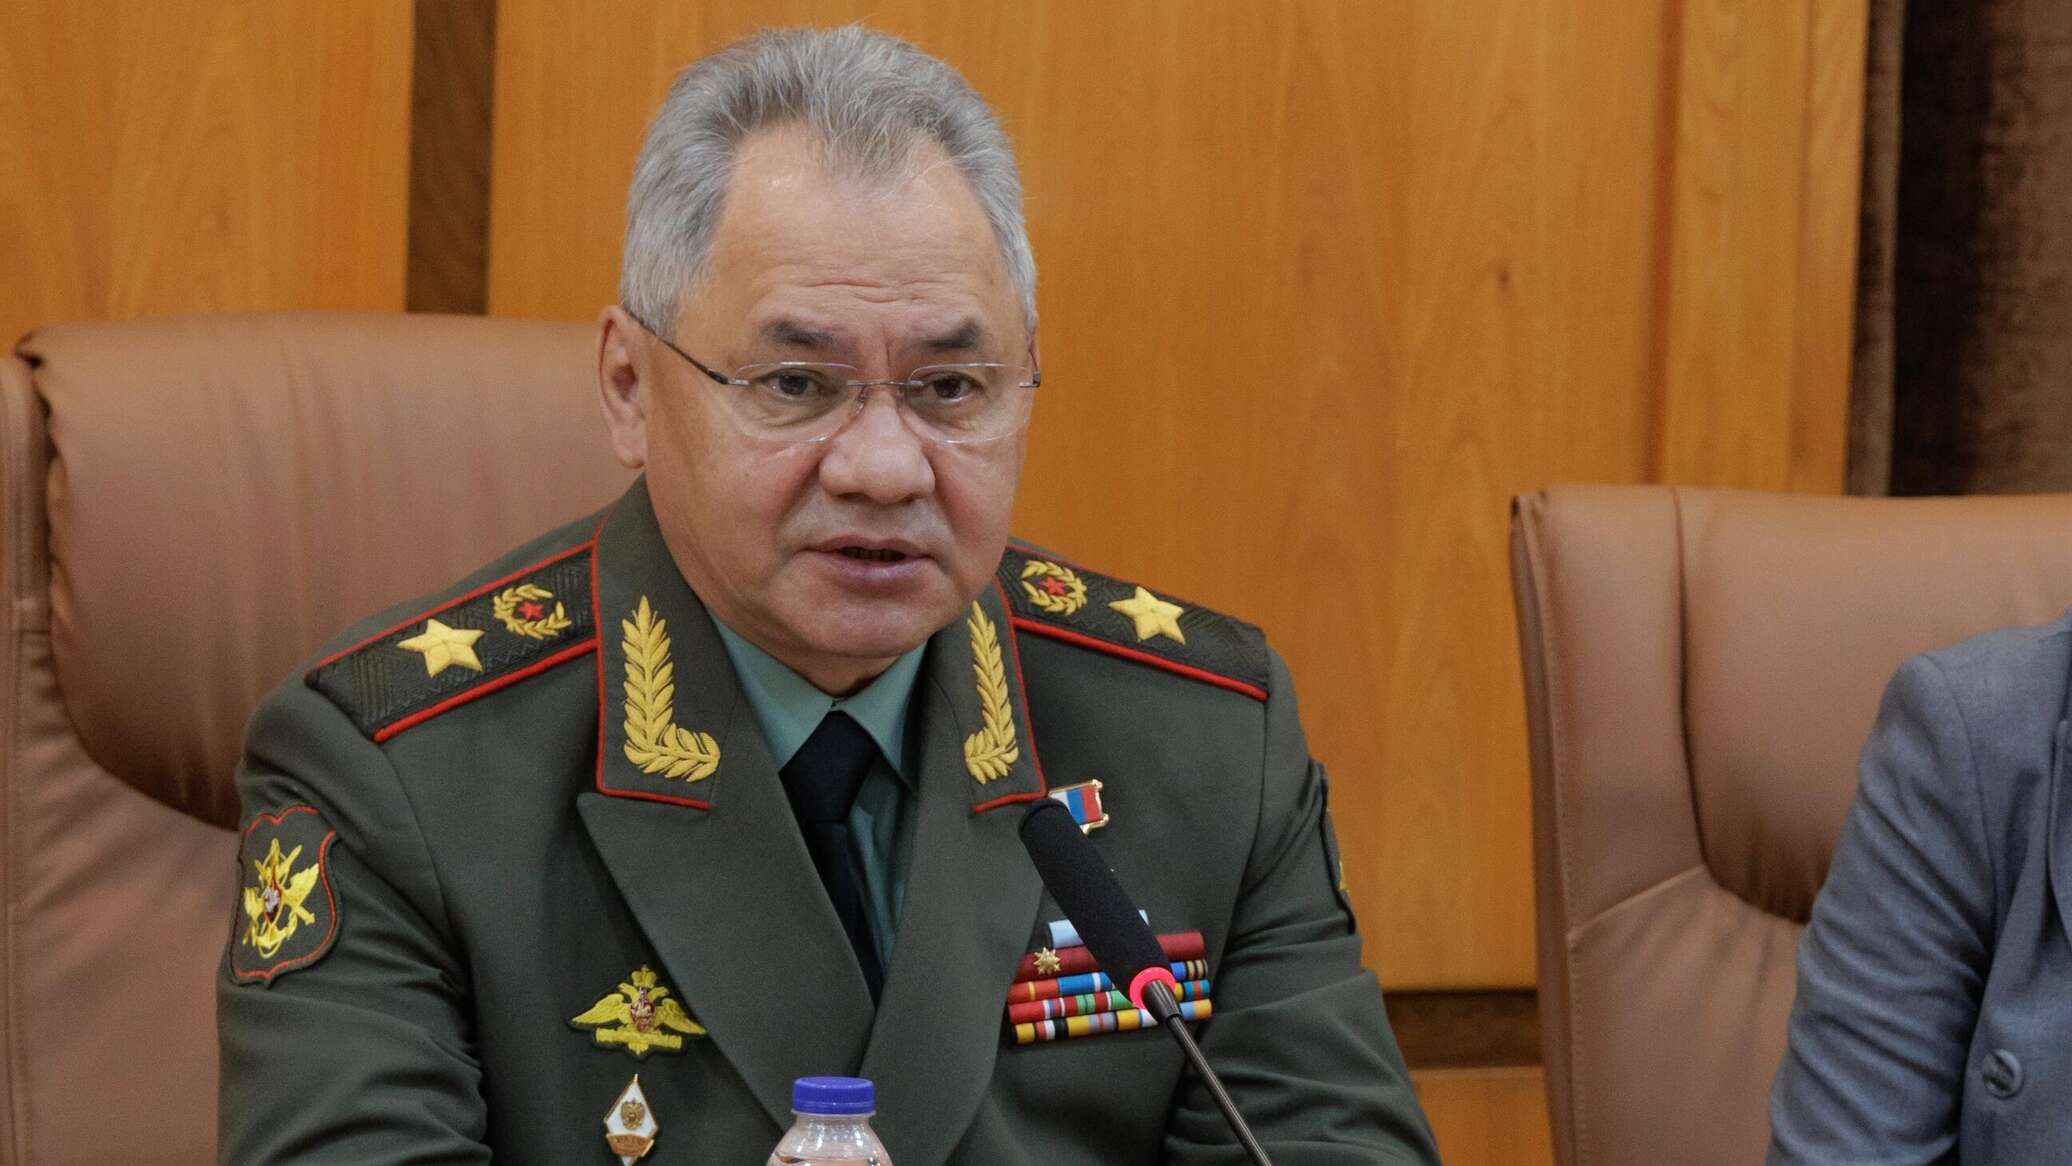 شويغو: الجيش الروسي سيدمر طائرات "إف- 16" المرسلة إلى كييف بغضون أيام